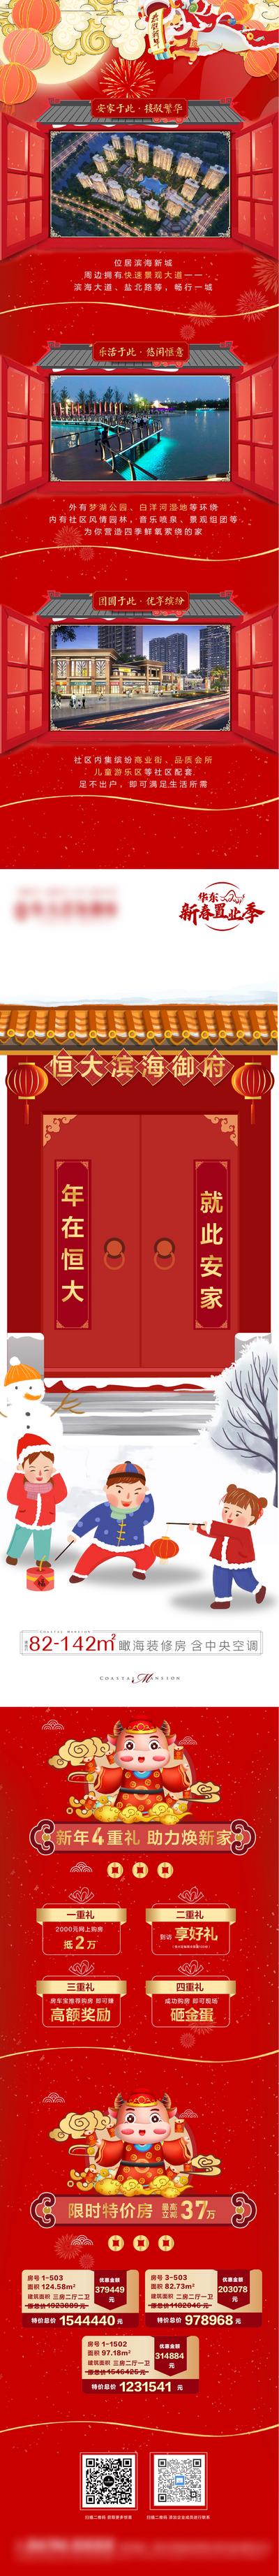 南门网 专题设计 长图 房地产 中国传统节日 过年 新年 春节 返乡置业 四重礼 特价房 窗户 